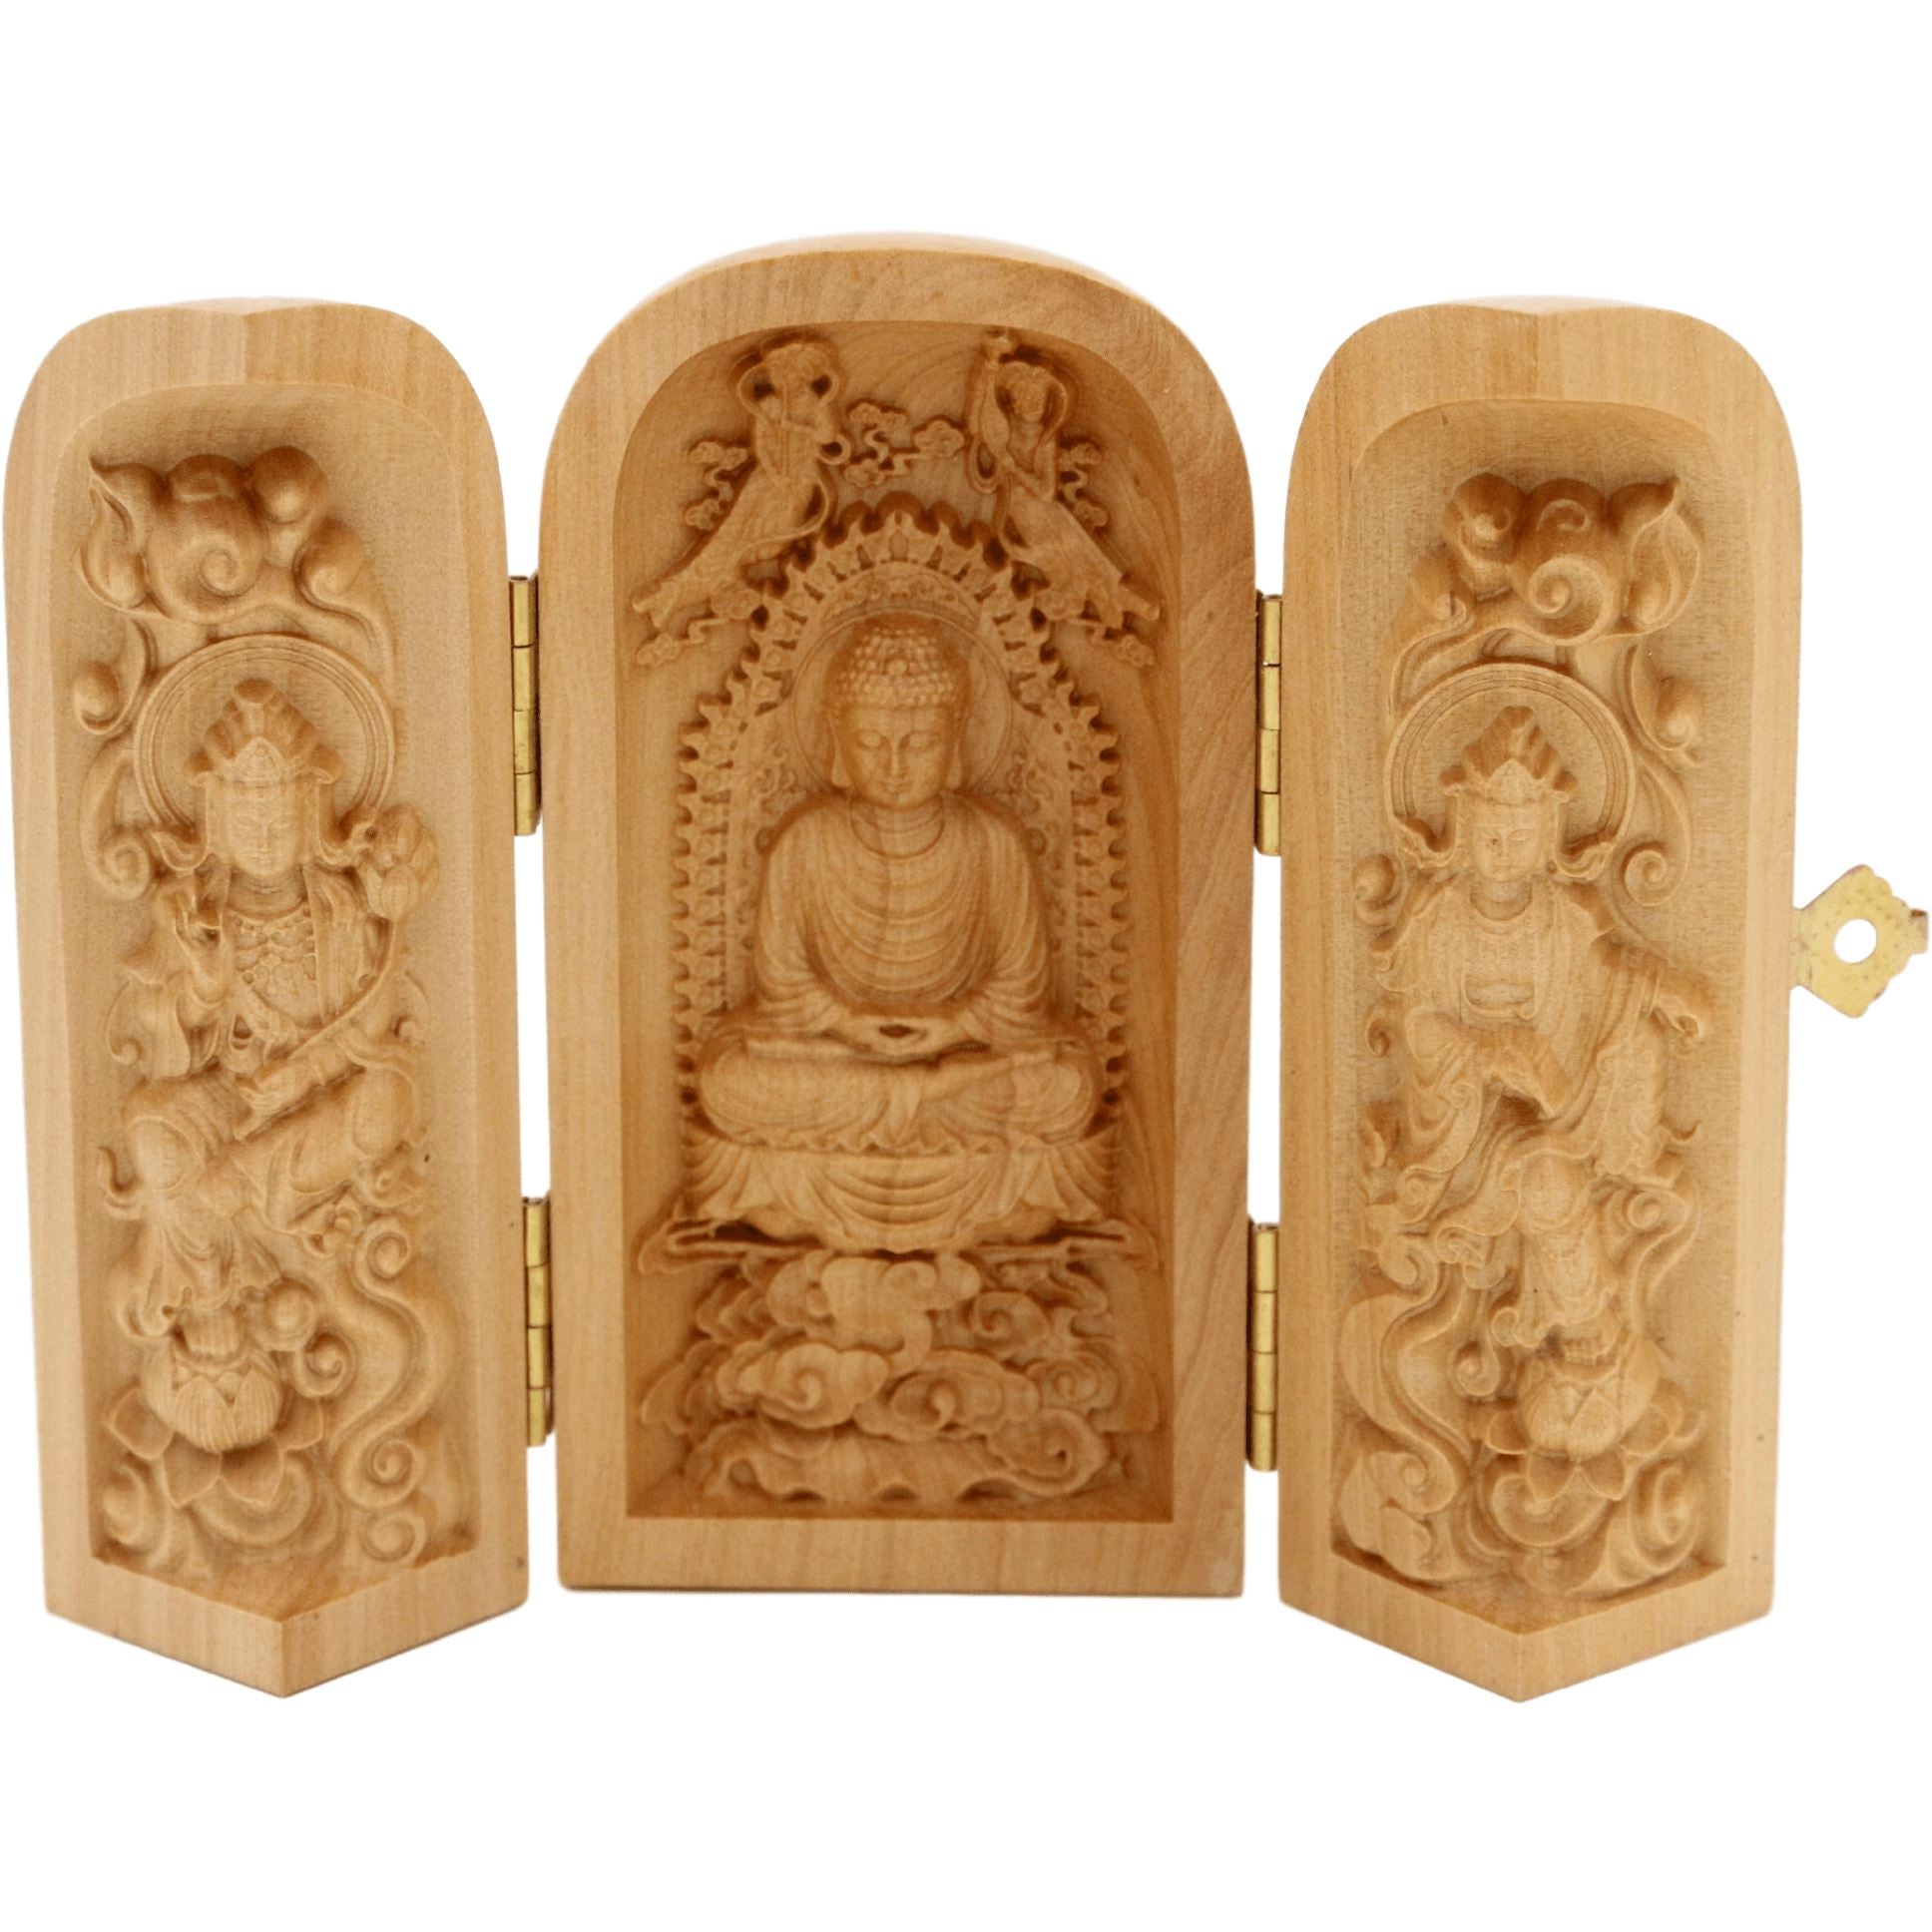 Coffret de 3 statuettes artisanales en bois - Bouddha Amitabha - Design 3 Statues Bouddha Artisan d'Asie 